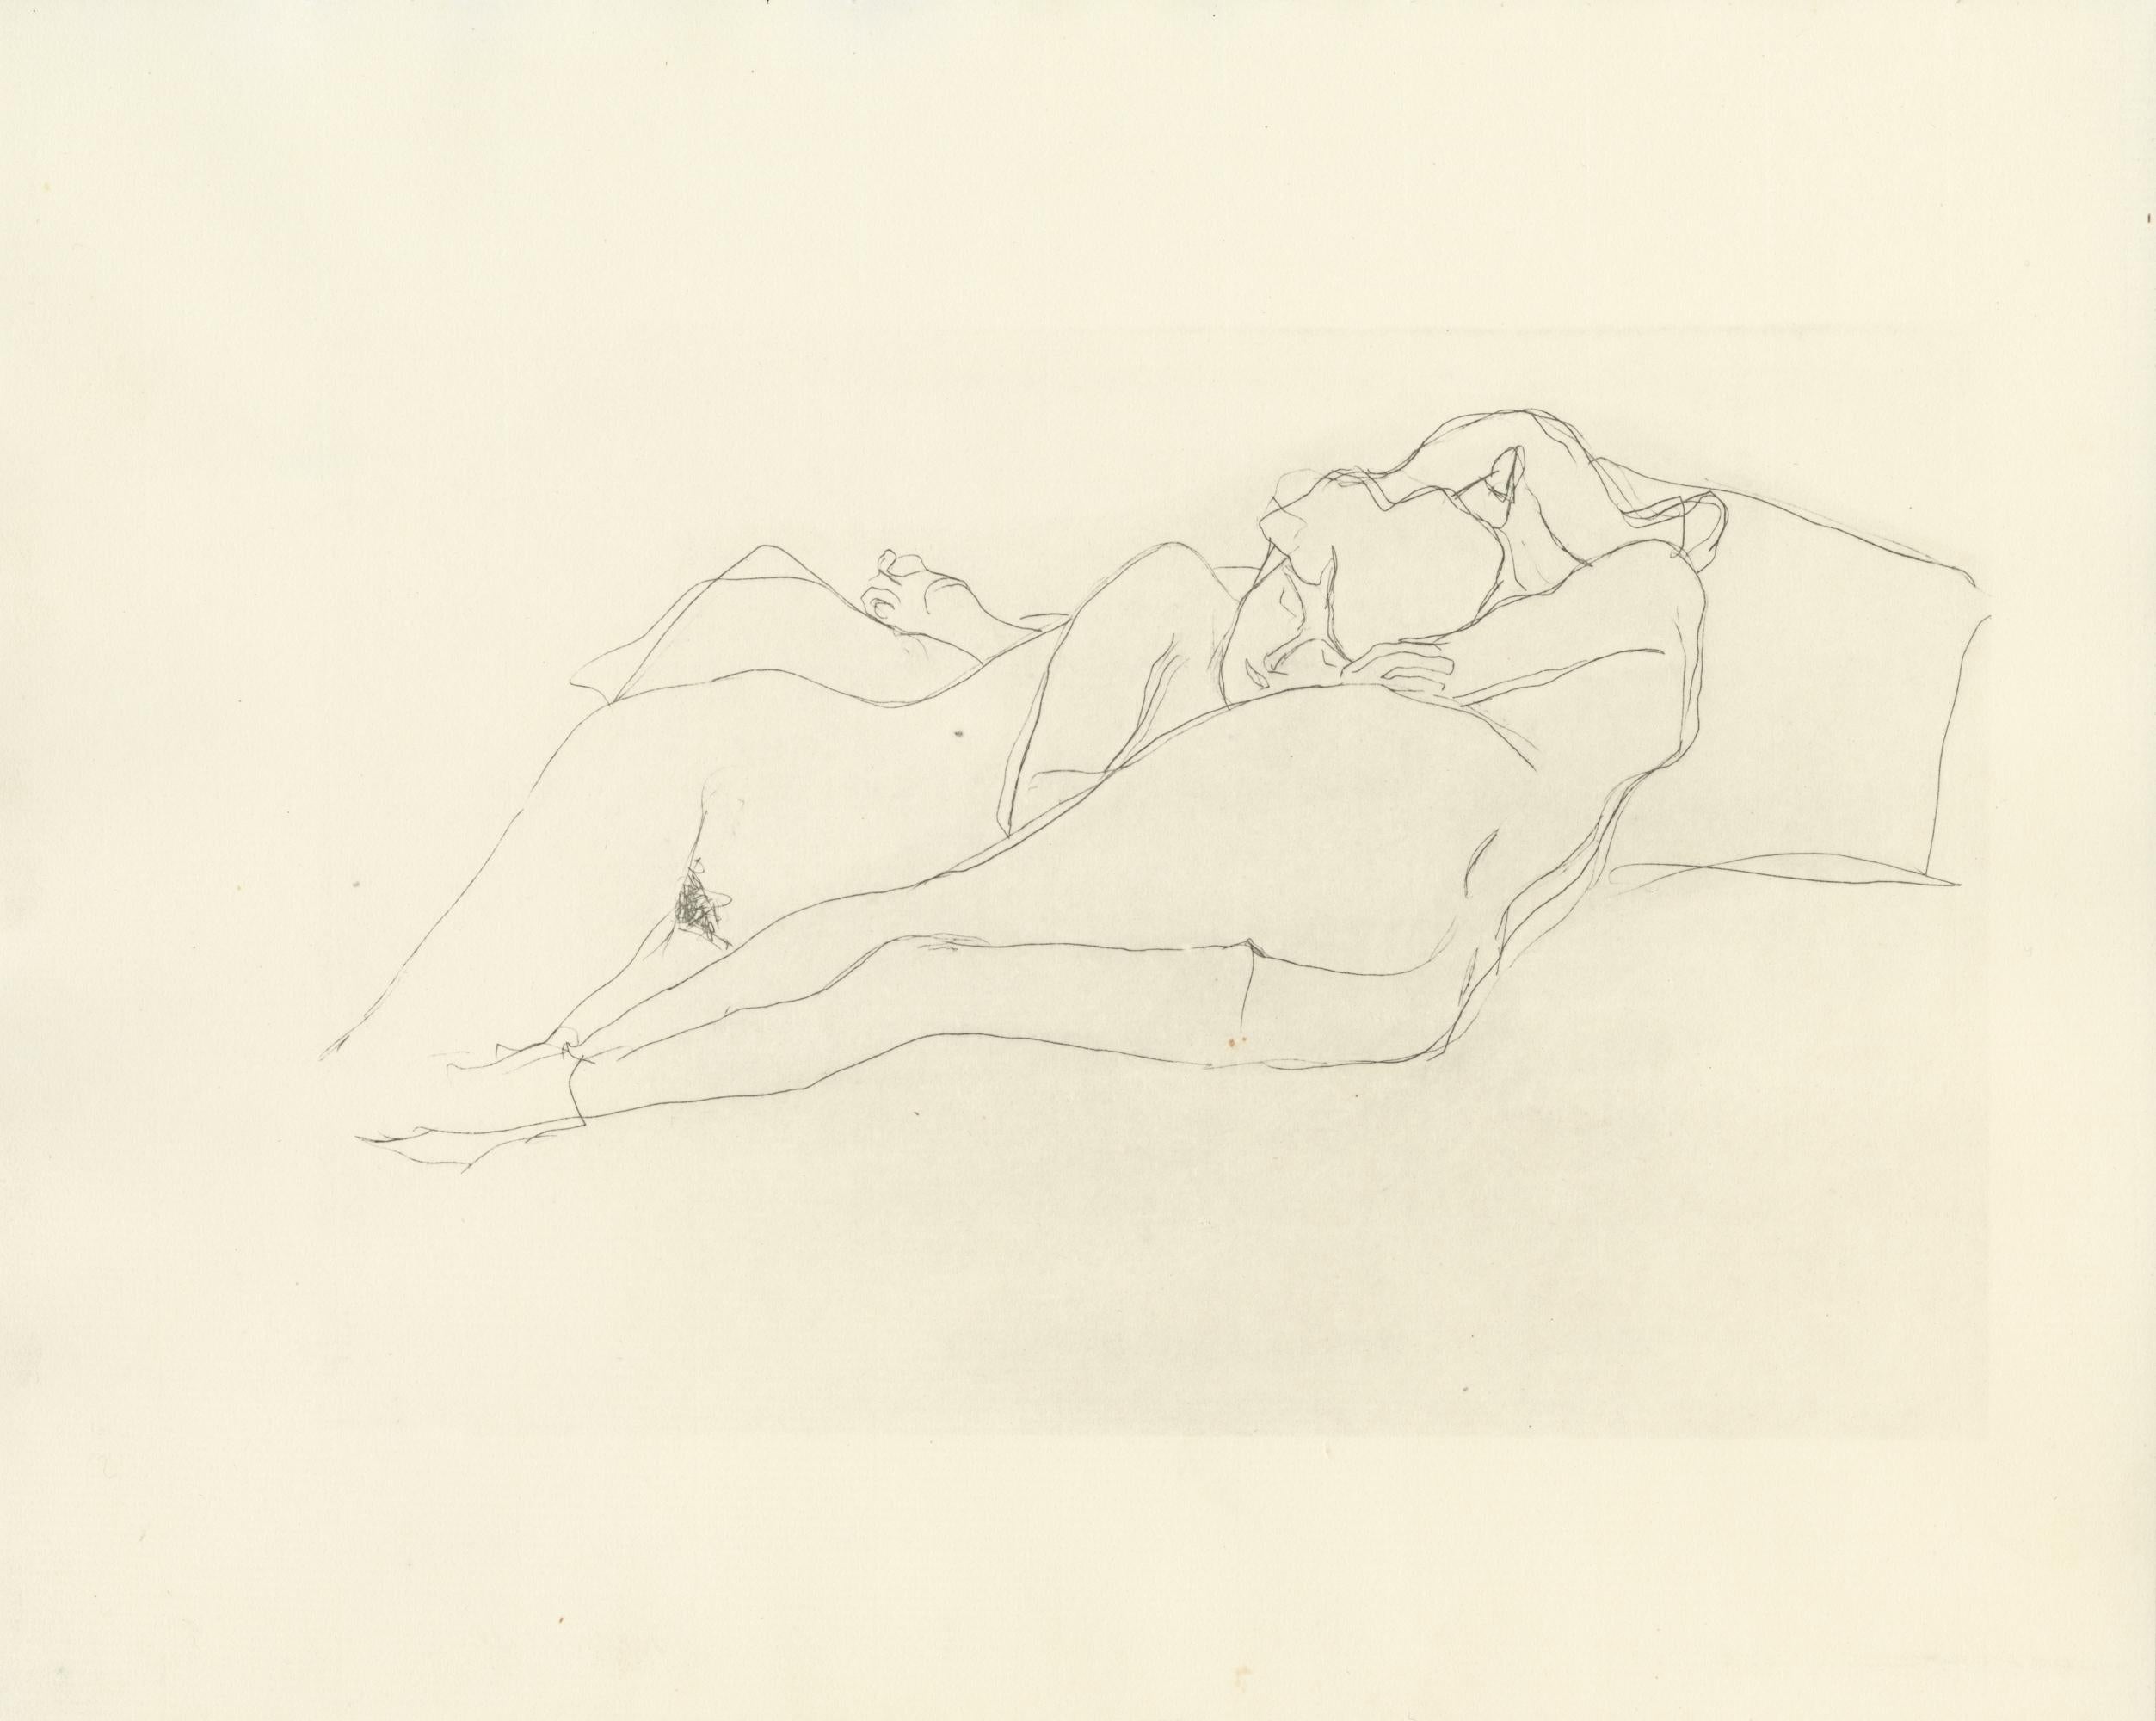 Planche n° 10 du portfolio "Dialogues des courtisanes" de Gustav Klimt de 1907, composé de 15 collotypes sur papier japon crème. Les dessins de ce folio seraient des études pour les célèbres tableaux de Klimt, les Serpents d'eau. 

Cette estampe